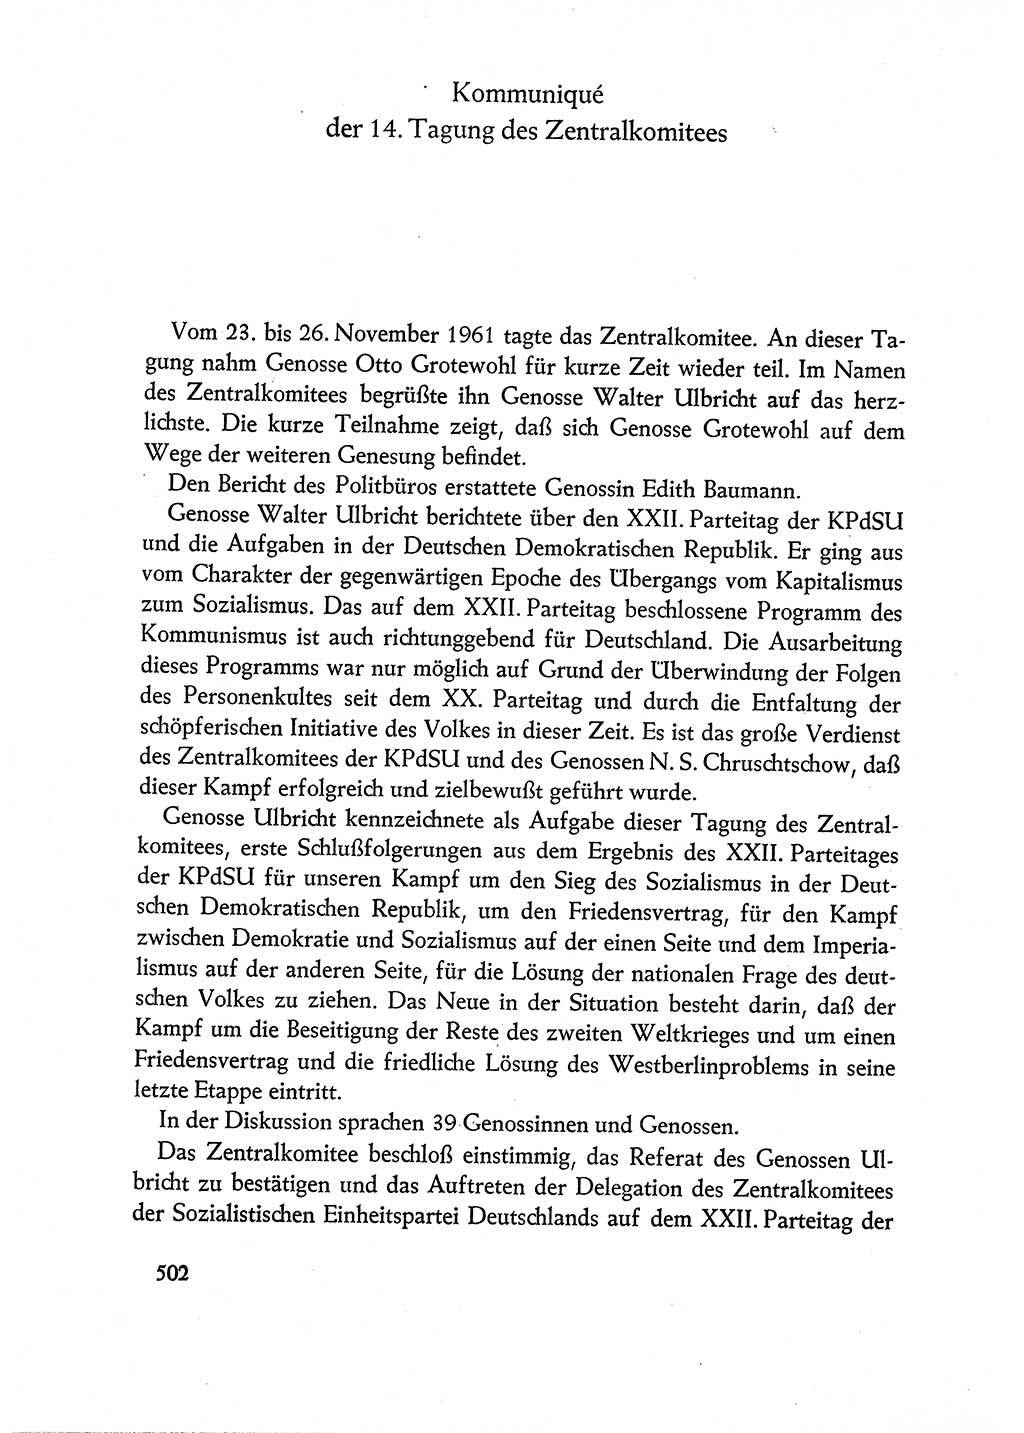 Dokumente der Sozialistischen Einheitspartei Deutschlands (SED) [Deutsche Demokratische Republik (DDR)] 1960-1961, Seite 502 (Dok. SED DDR 1960-1961, S. 502)